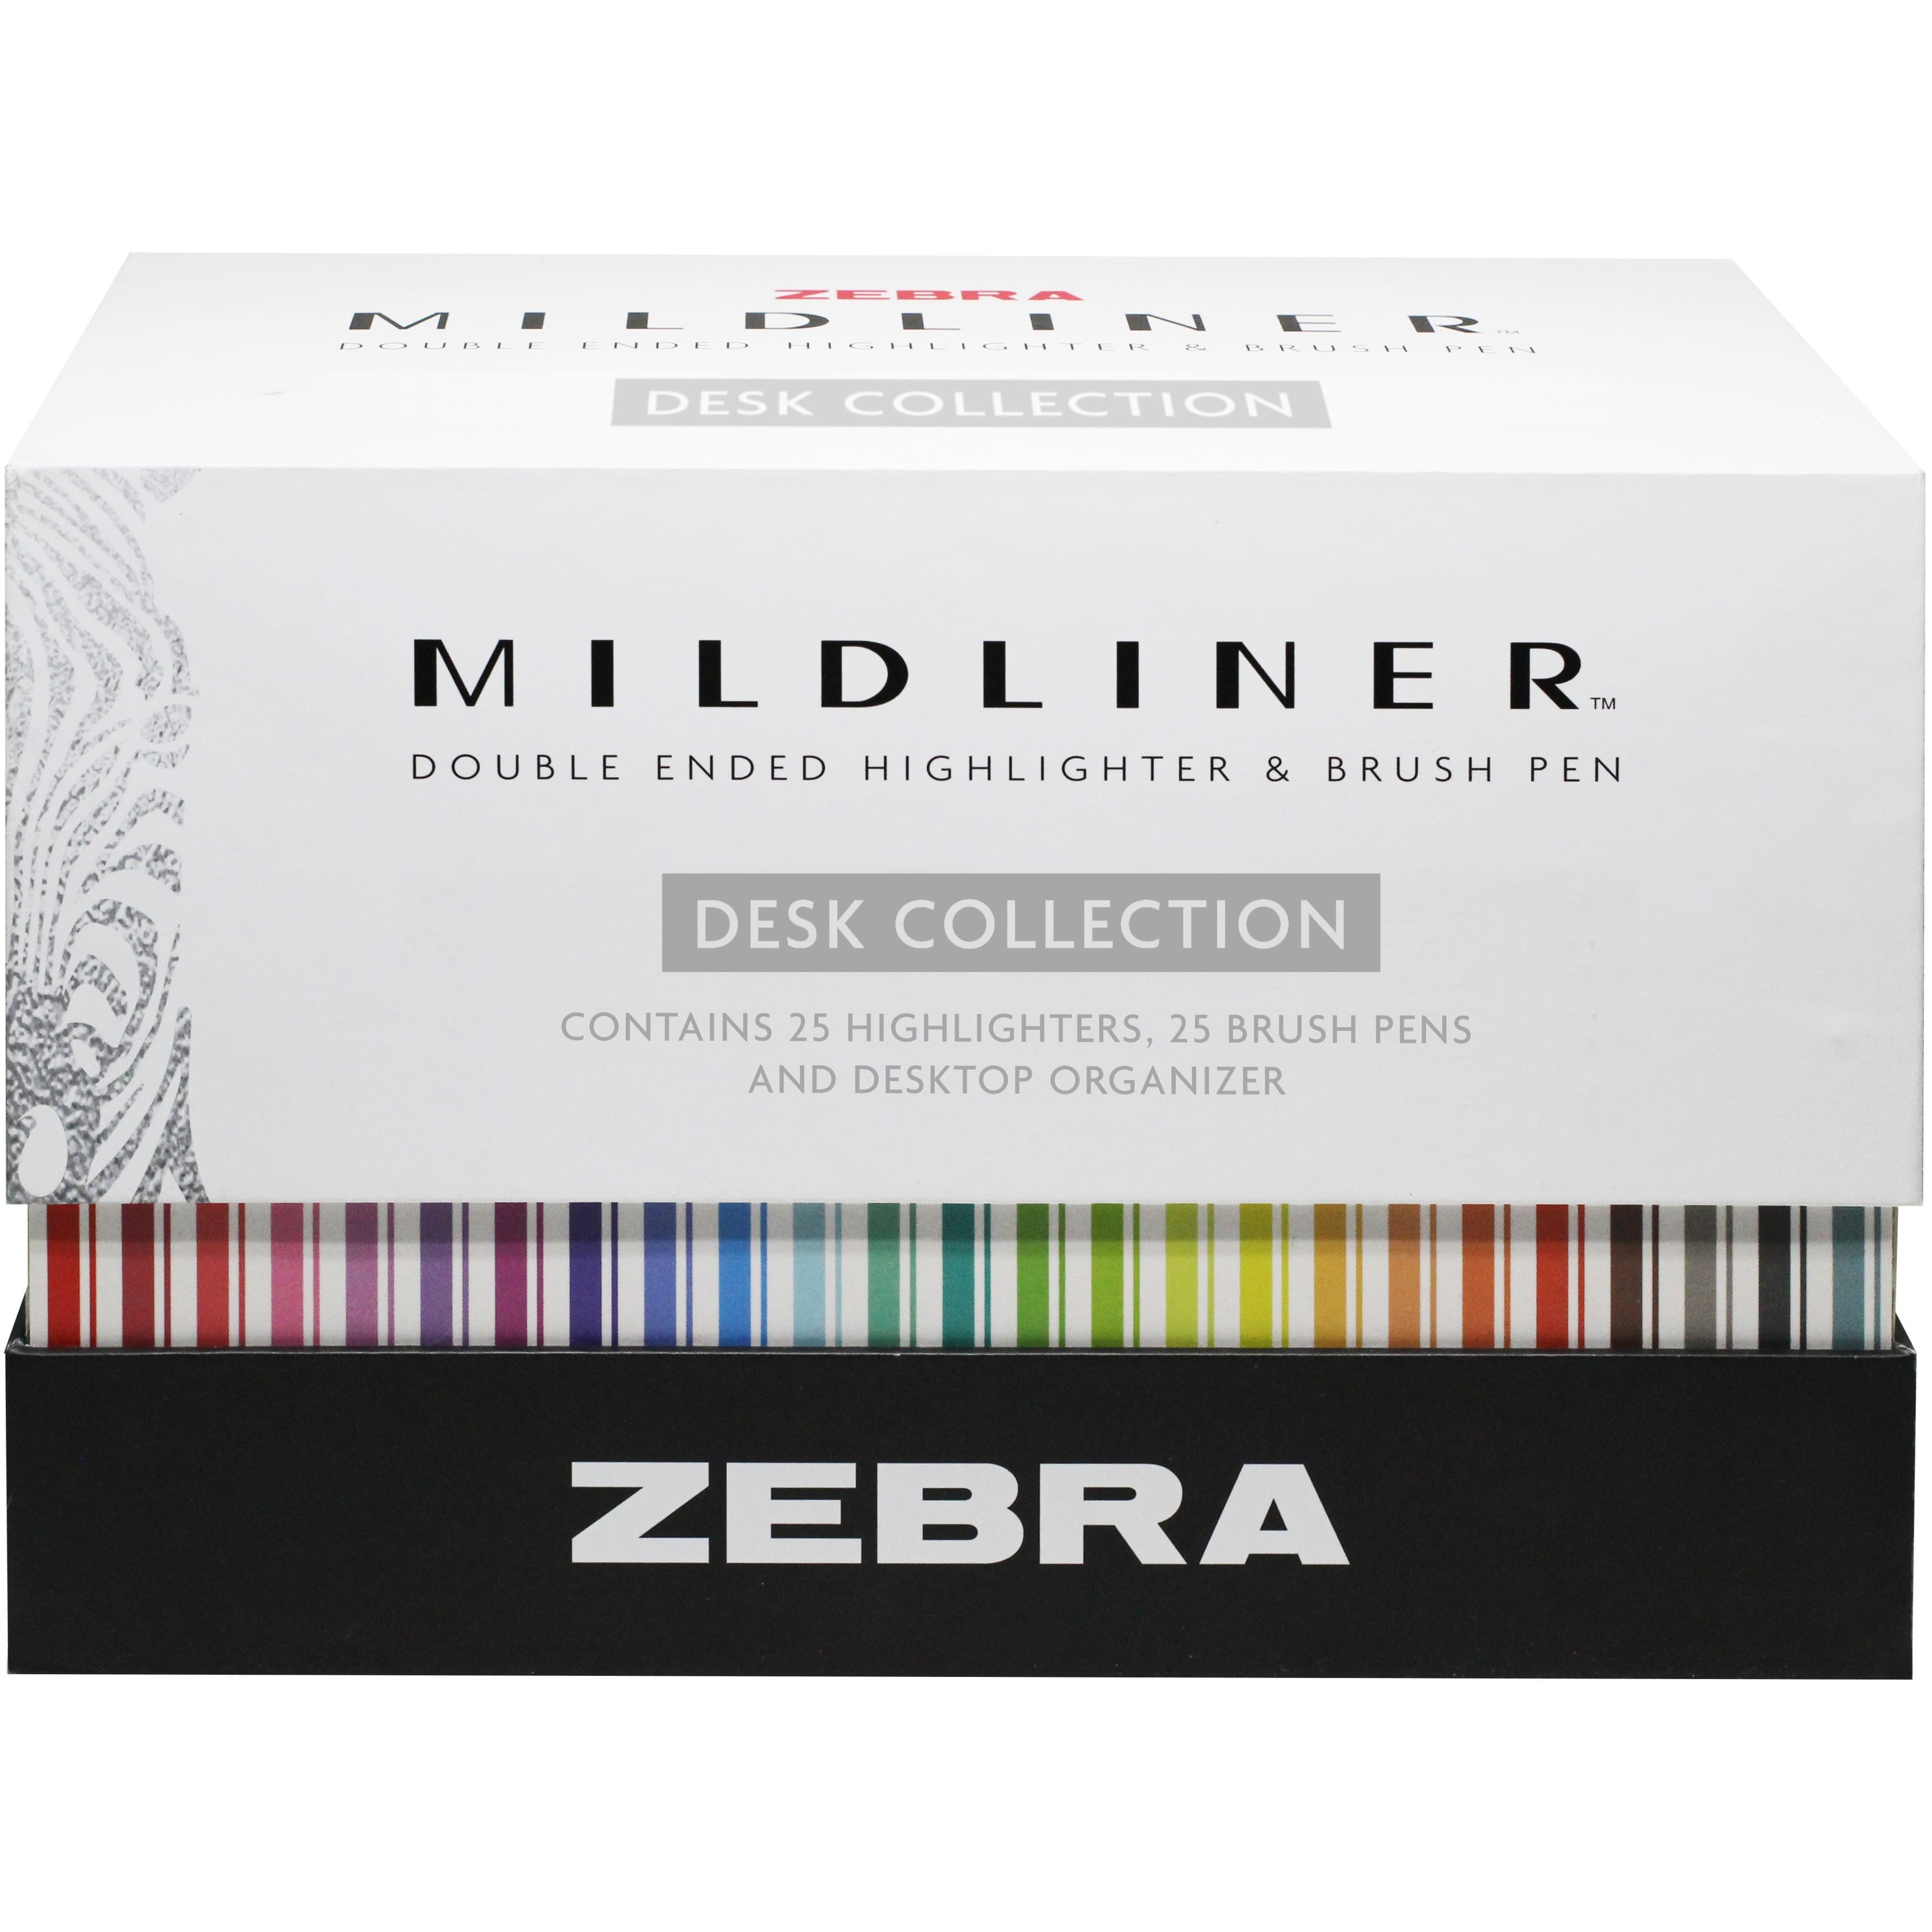 Zebra Mildliner Double Ended Highlighter Assorted 8Pk - Office Depot